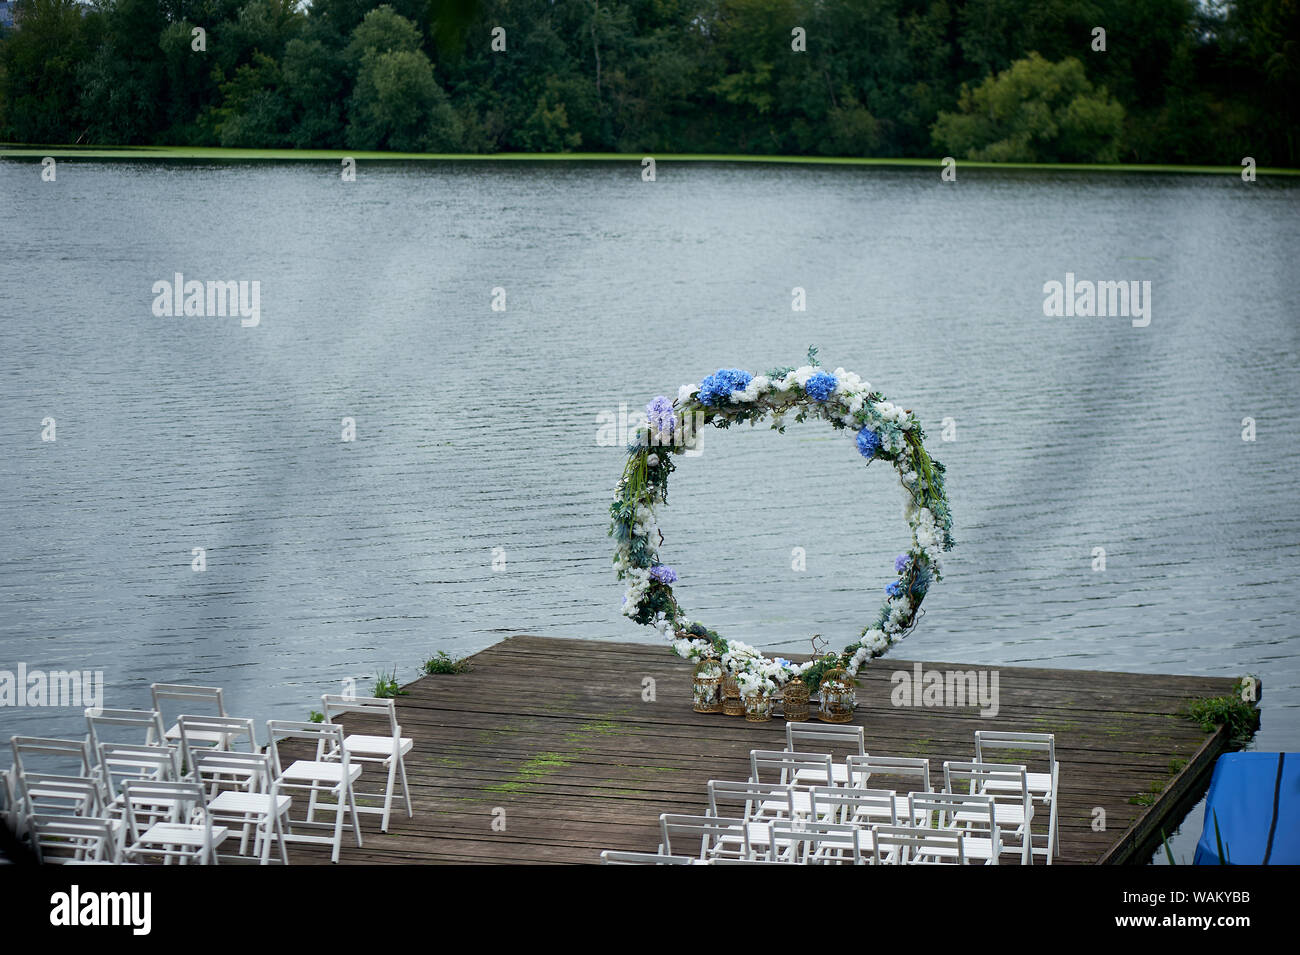 Rundbogen mit weißen und blauen Blüten. Check-out auf dem Fluss oder See.Hochzeitsregistrierung. Stockfoto